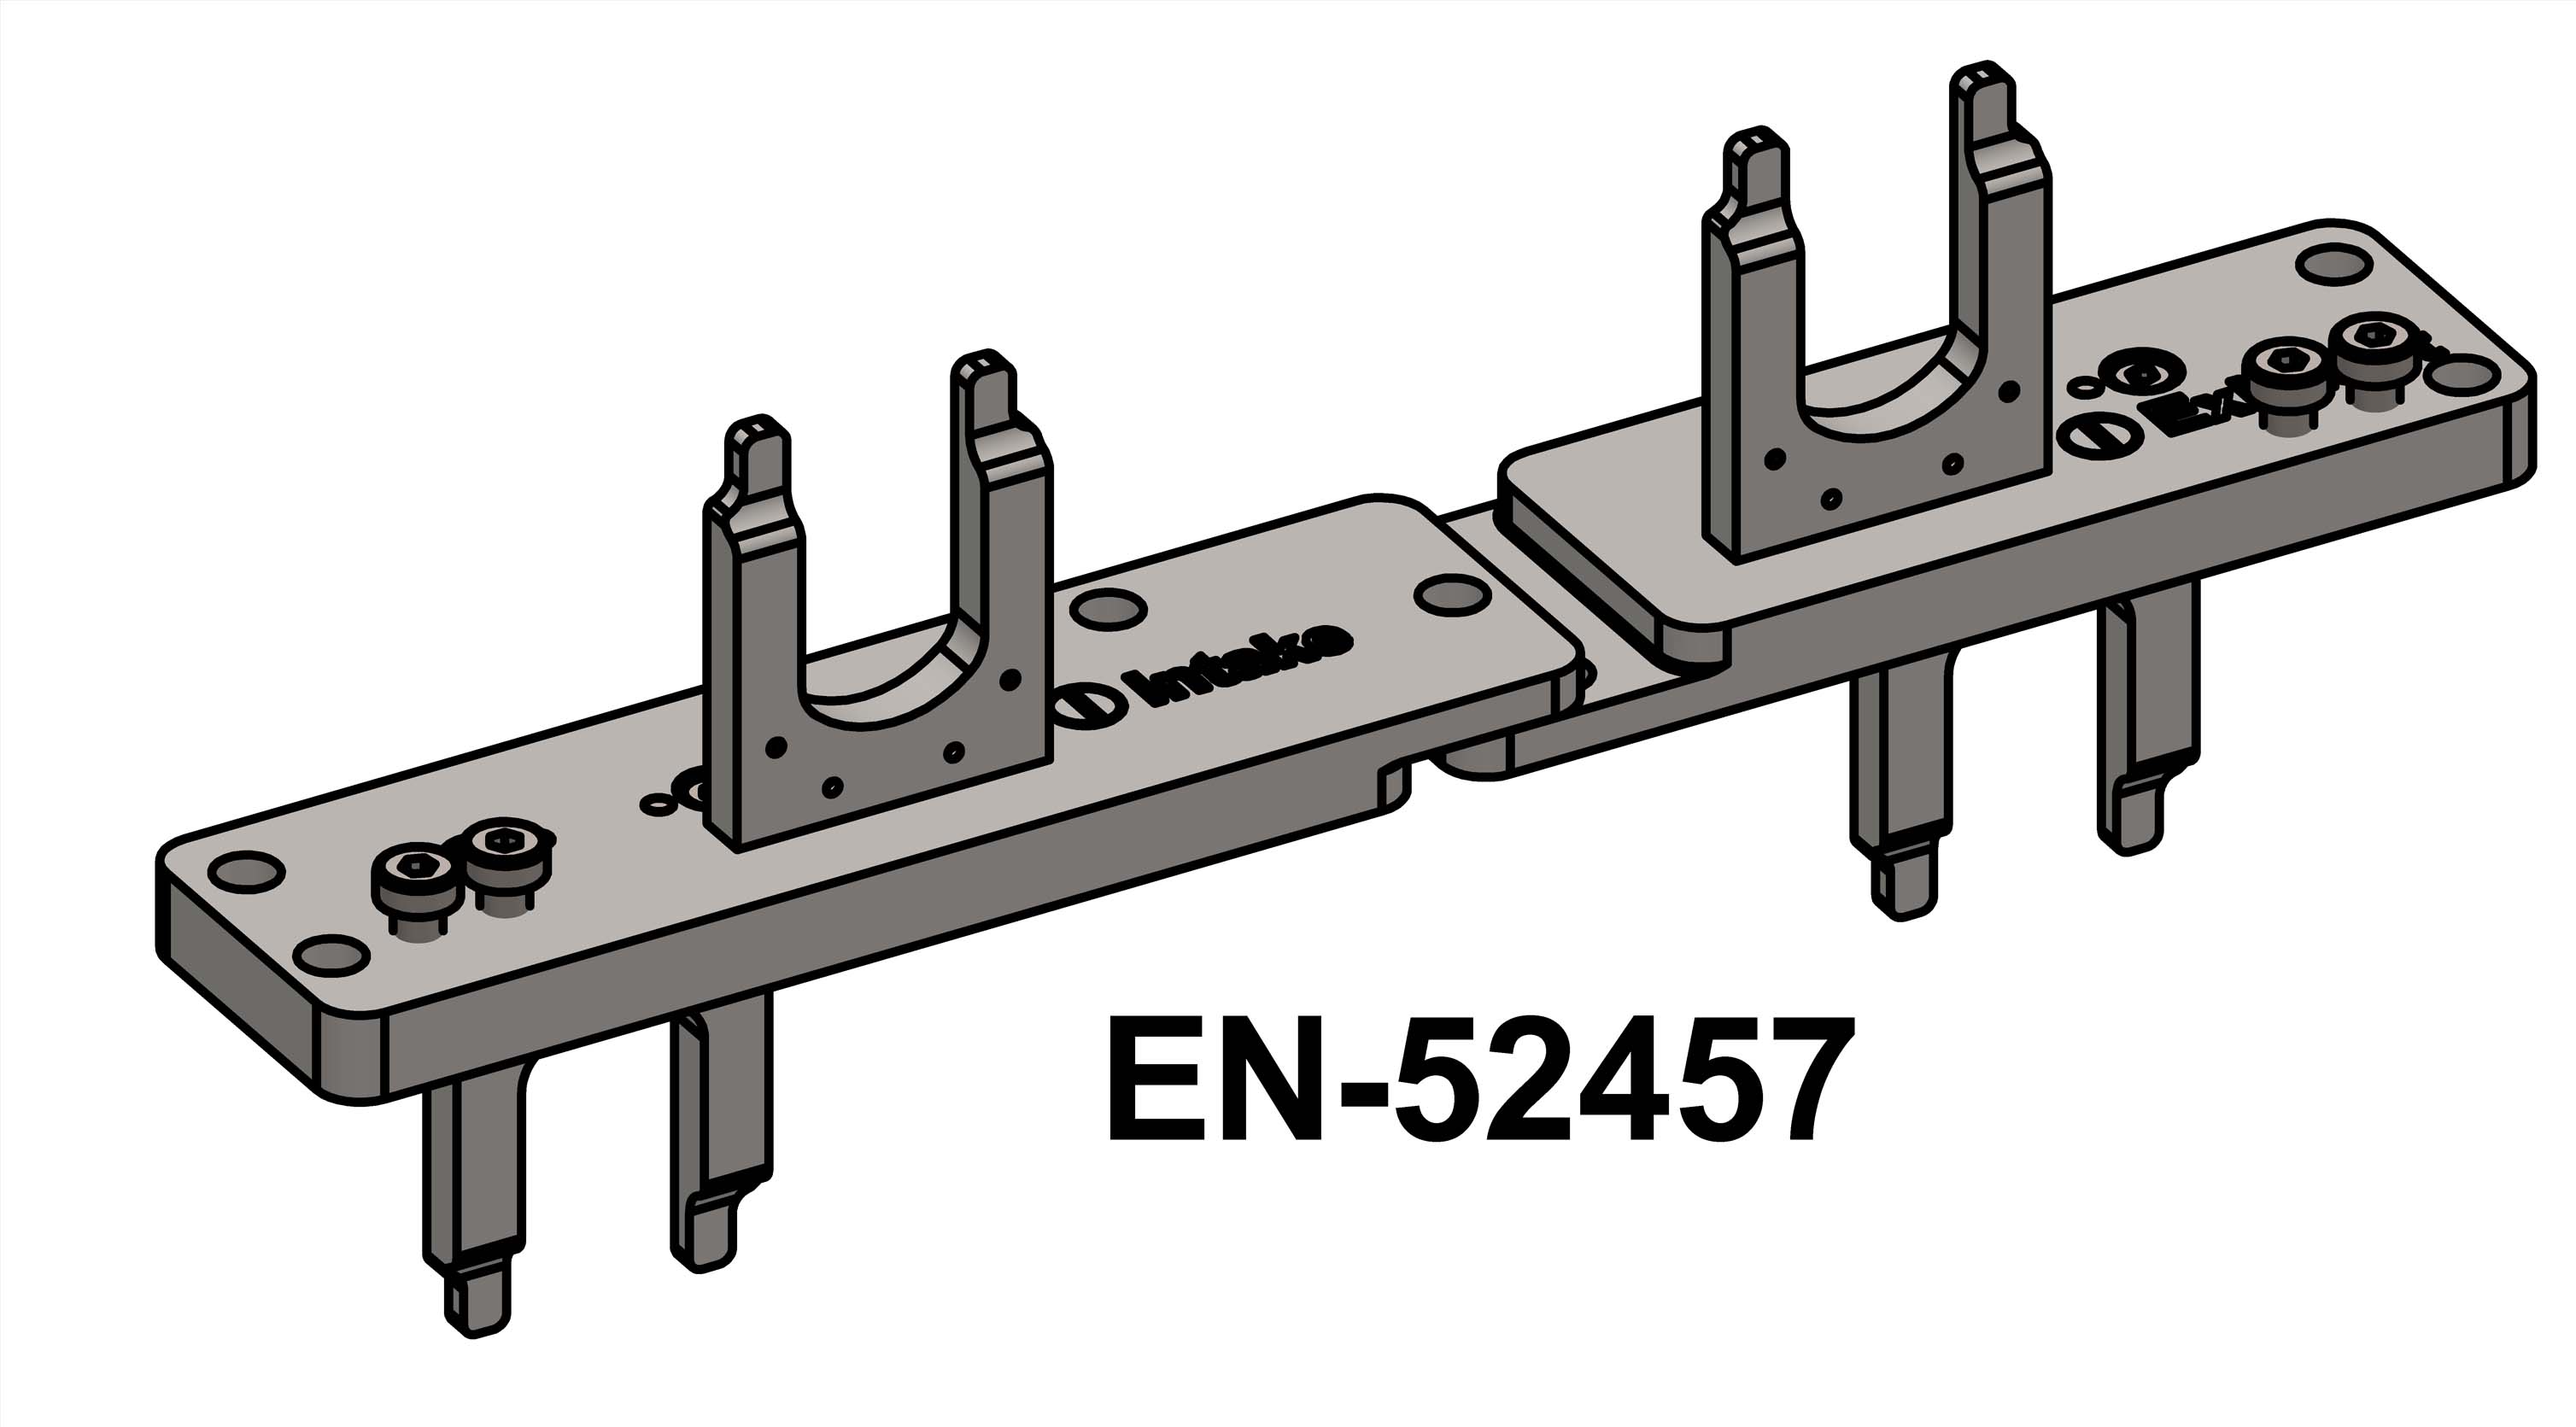 EN-52457 - Camshaft Locking Tool